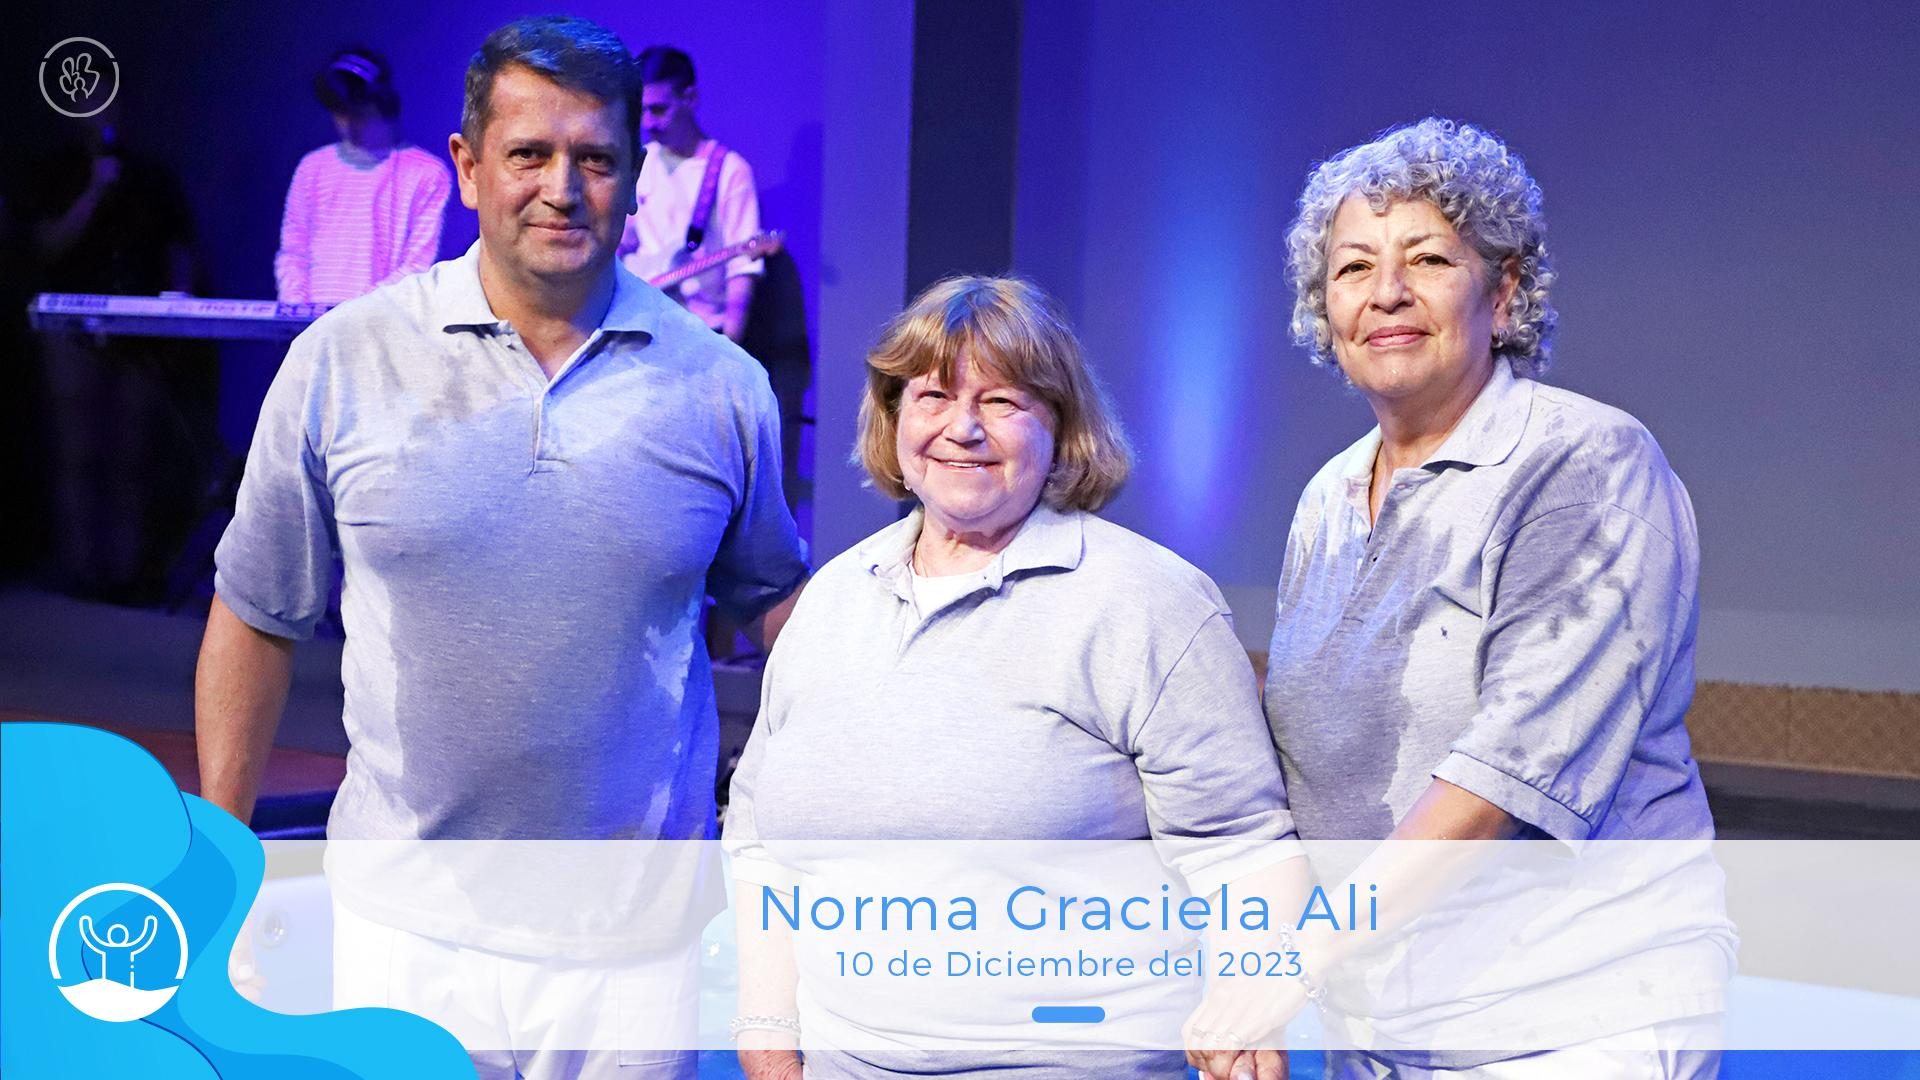 41 Ali Norma Graciela